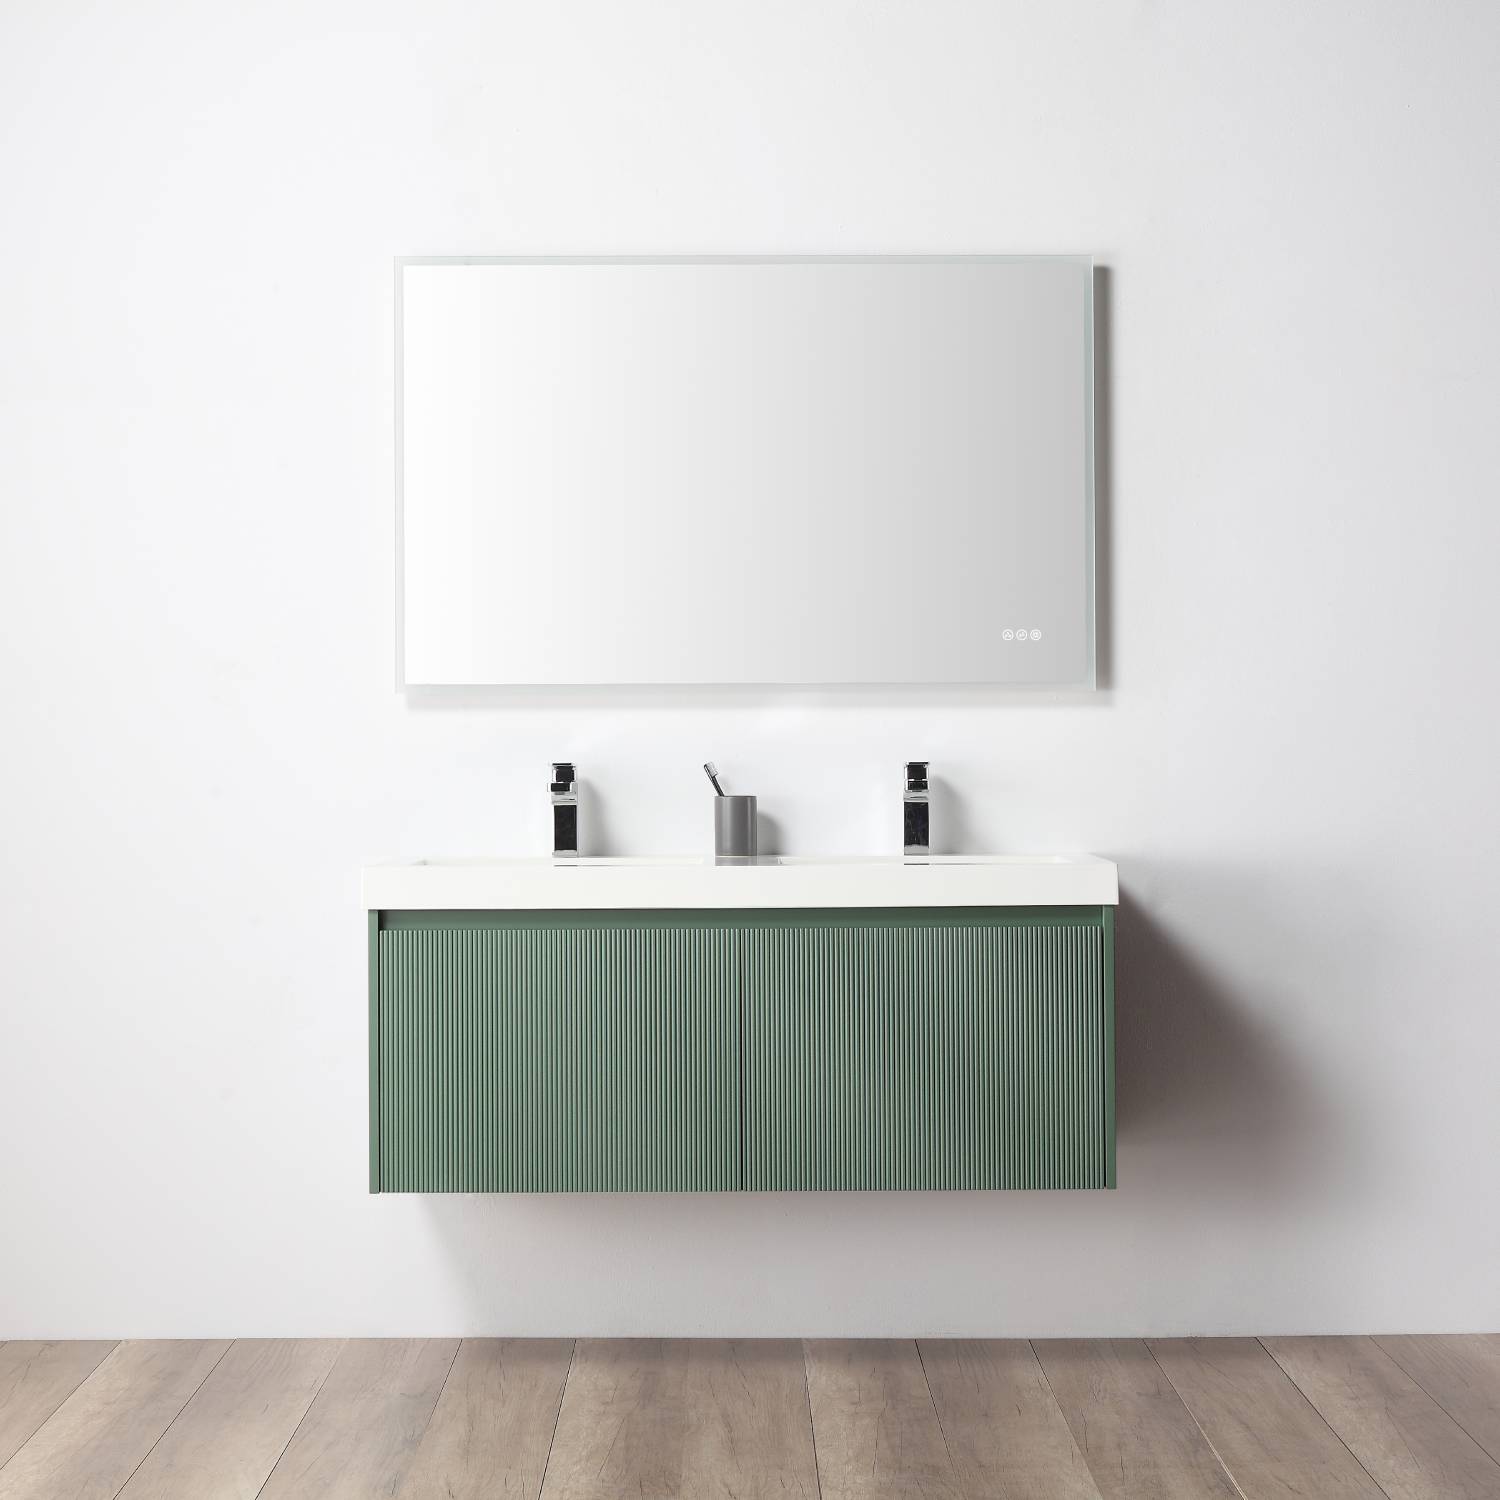 Positano 48" Double Bathroom Vanity  #size_48" Double  #color_aventurine green